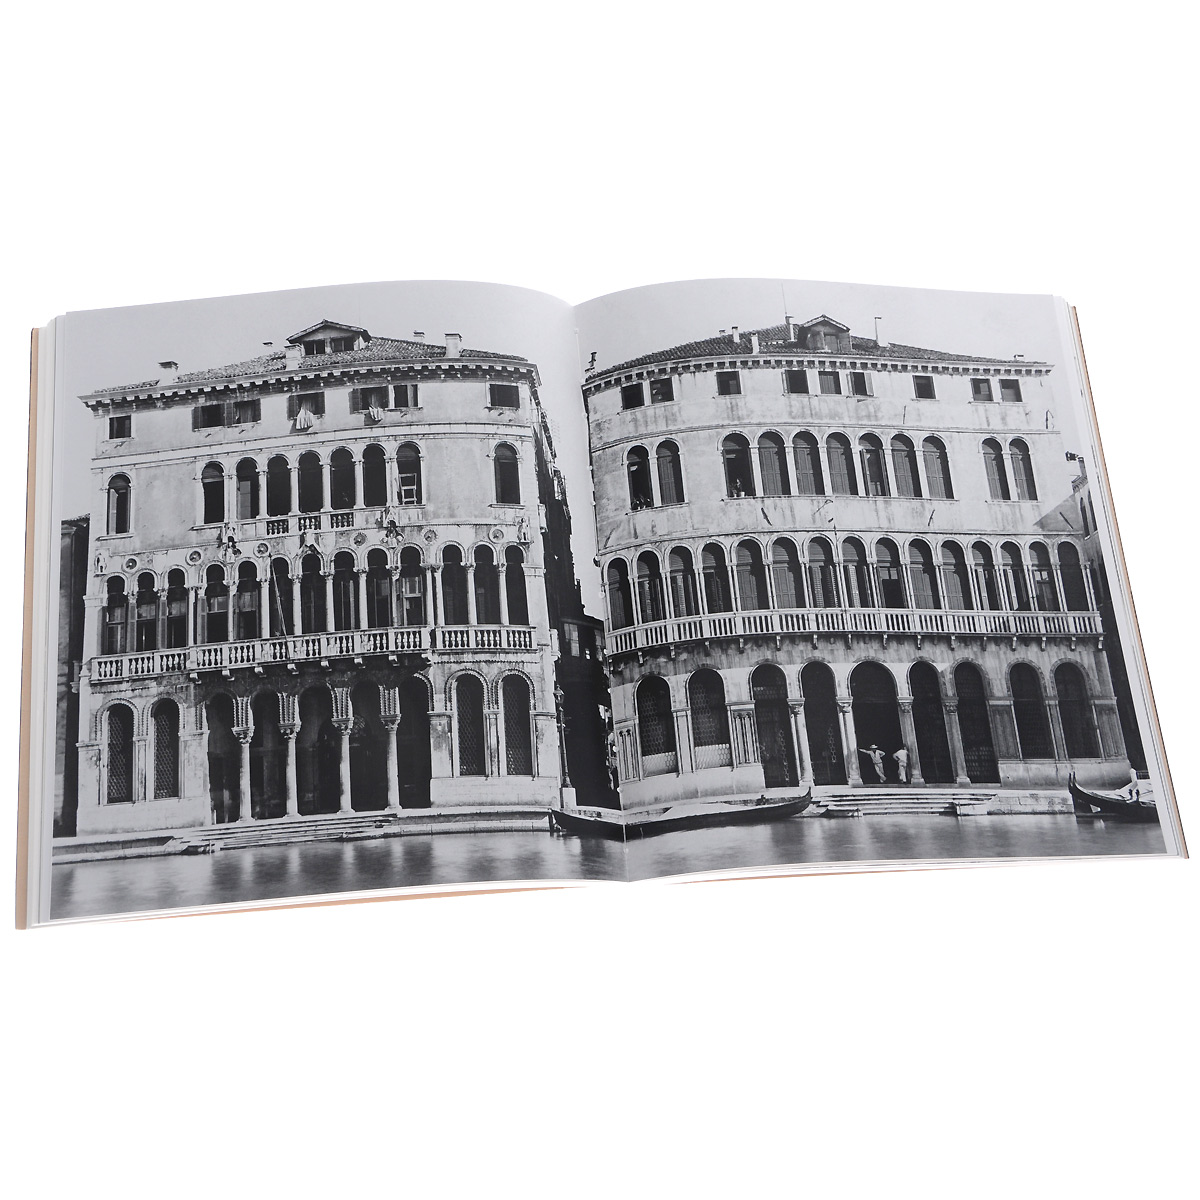 Главная улица Венеции. Большой канал в итальянских фотографиях конца XIX - начала XX века развивается уверенно утверждая